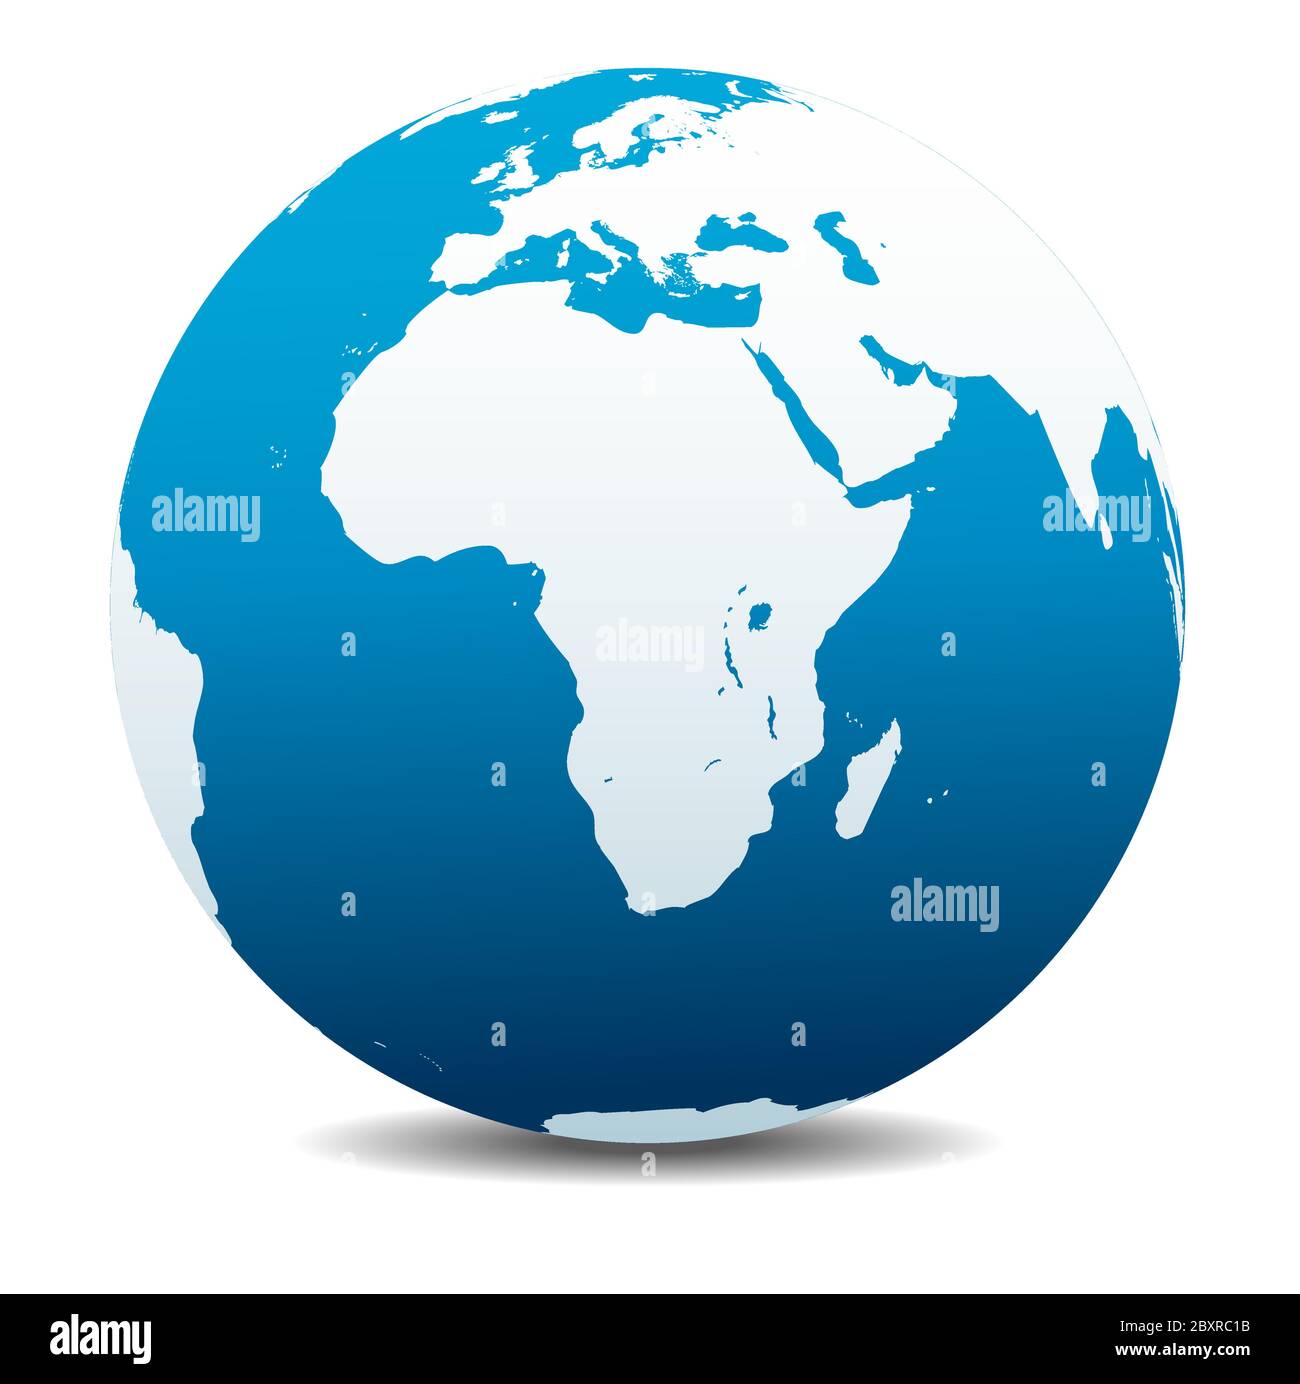 Afrika, Arabien. Vektorkarte Symbol des Globus, Erde. Alle Elemente befinden sich auf einzelnen Ebenen in der Vektordatei. Stock Vektor